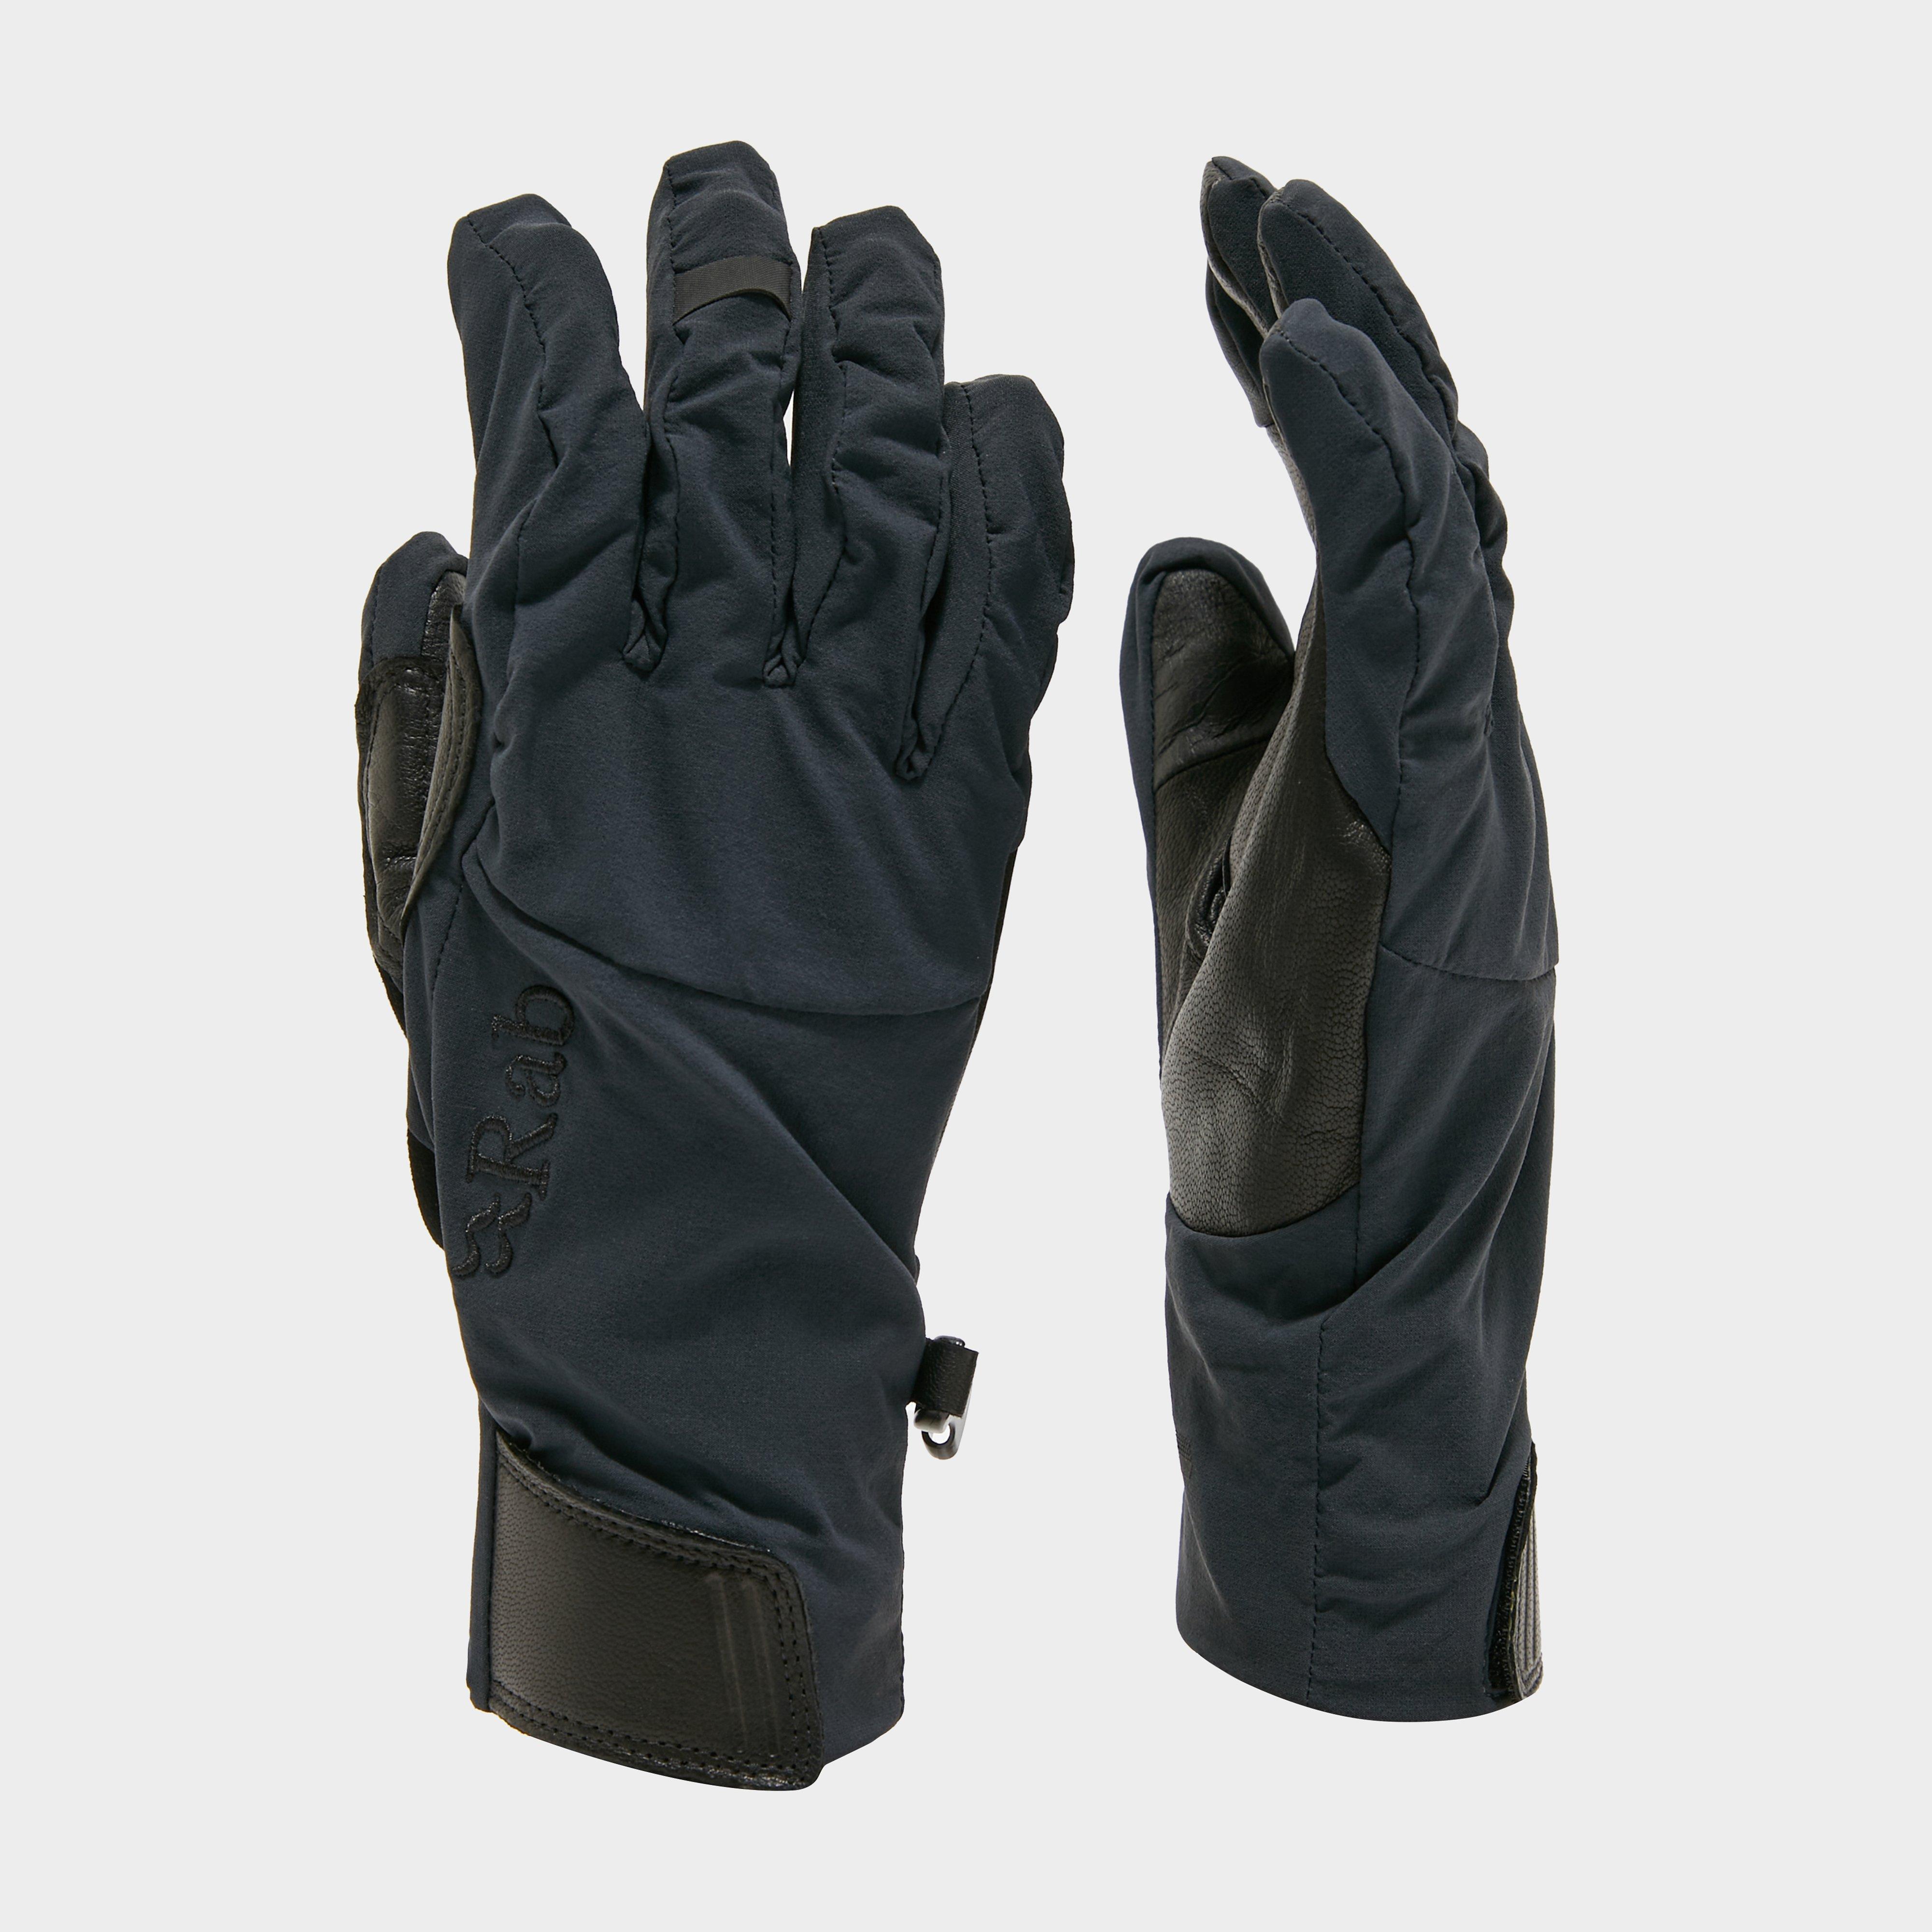 Rab Vapour-rise Glove - Glove/glove  Glove/glove